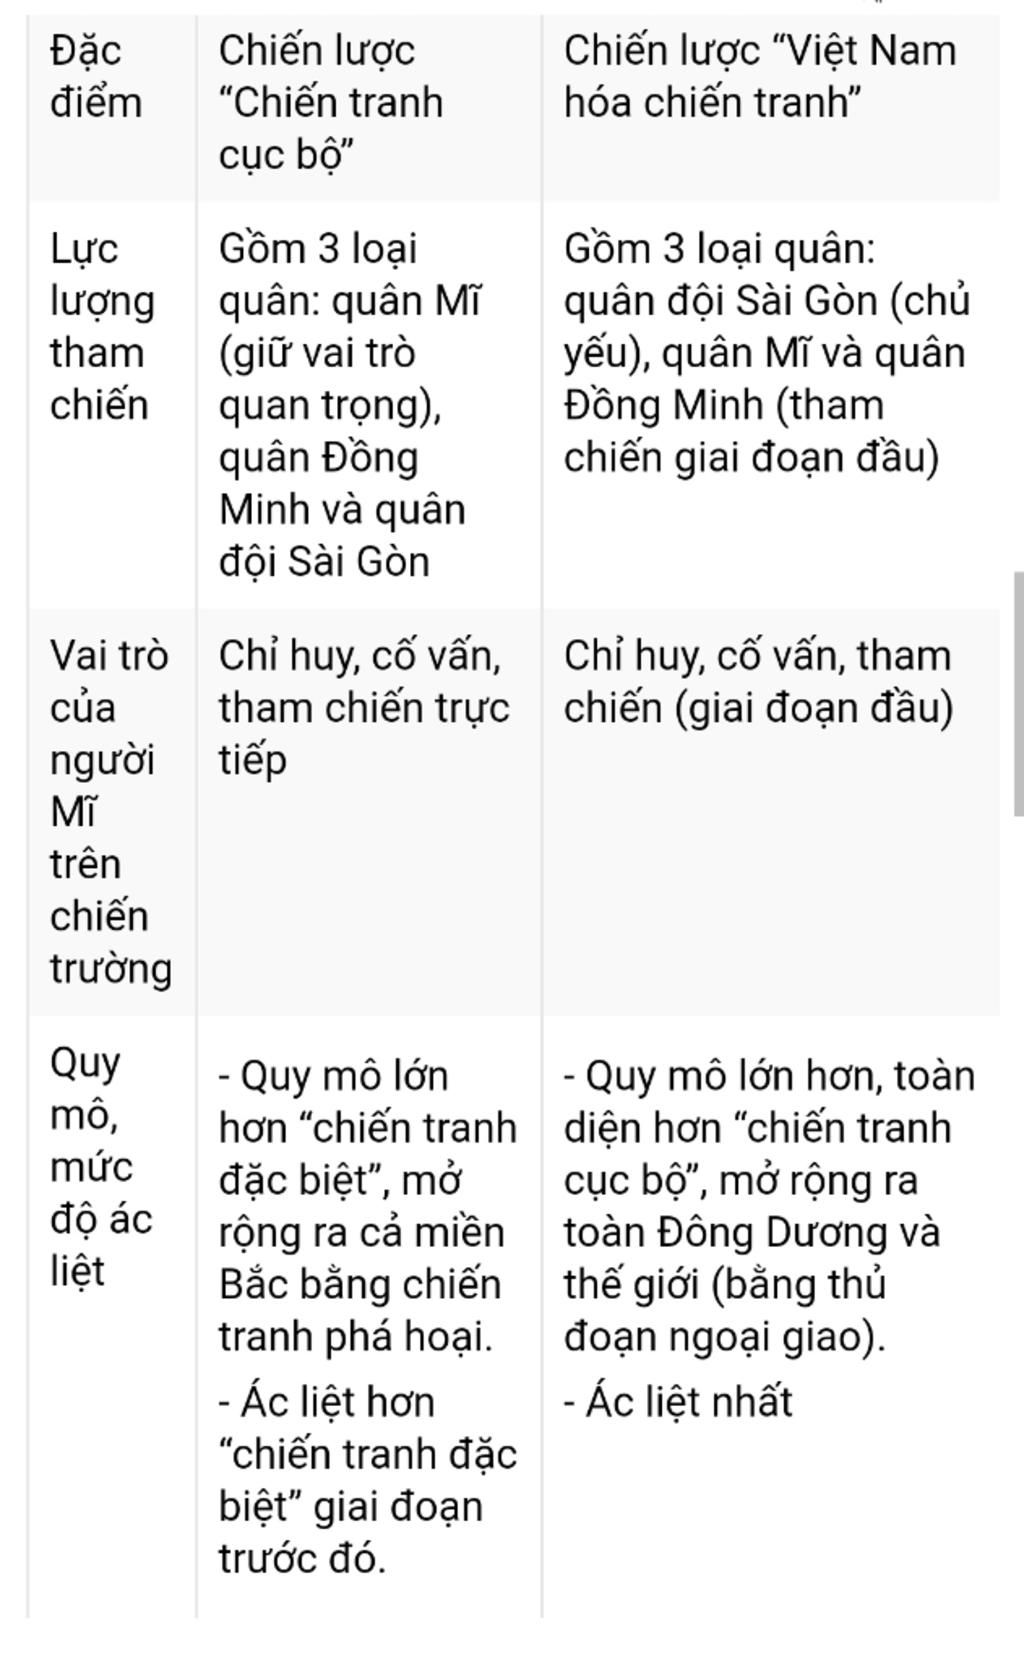 1-neu-va-giai-thich-duong-loi-khang-chien-chong-thuc-dan-phap-cua-nhan-dan-ta-tu-1946-1954-2-so